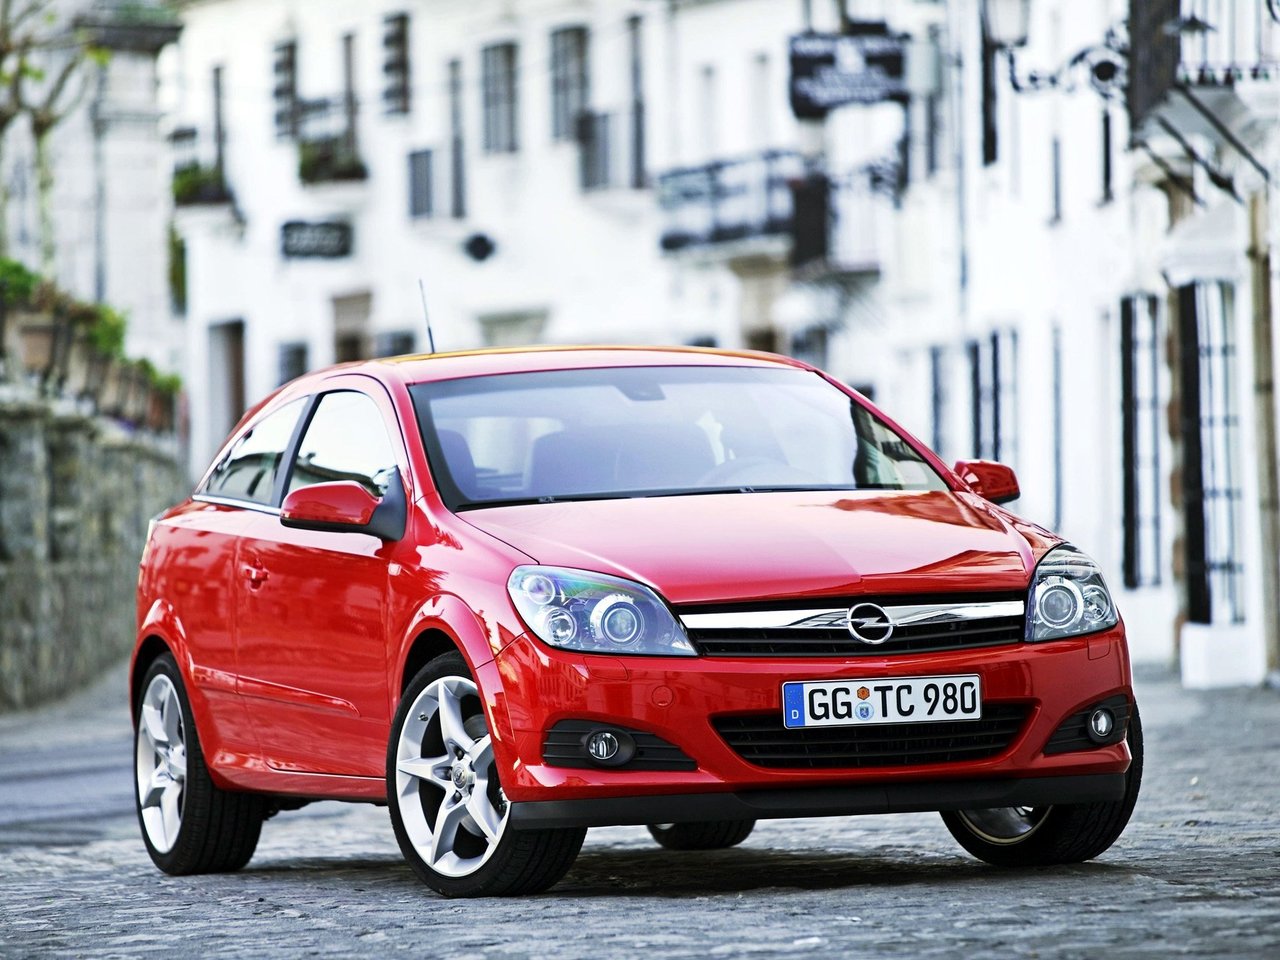 Расход газа семи комплектаций хэтчбек три двери Opel Astra. Разница стоимости заправки газом и бензином. Автономный пробег до и после установки ГБО.